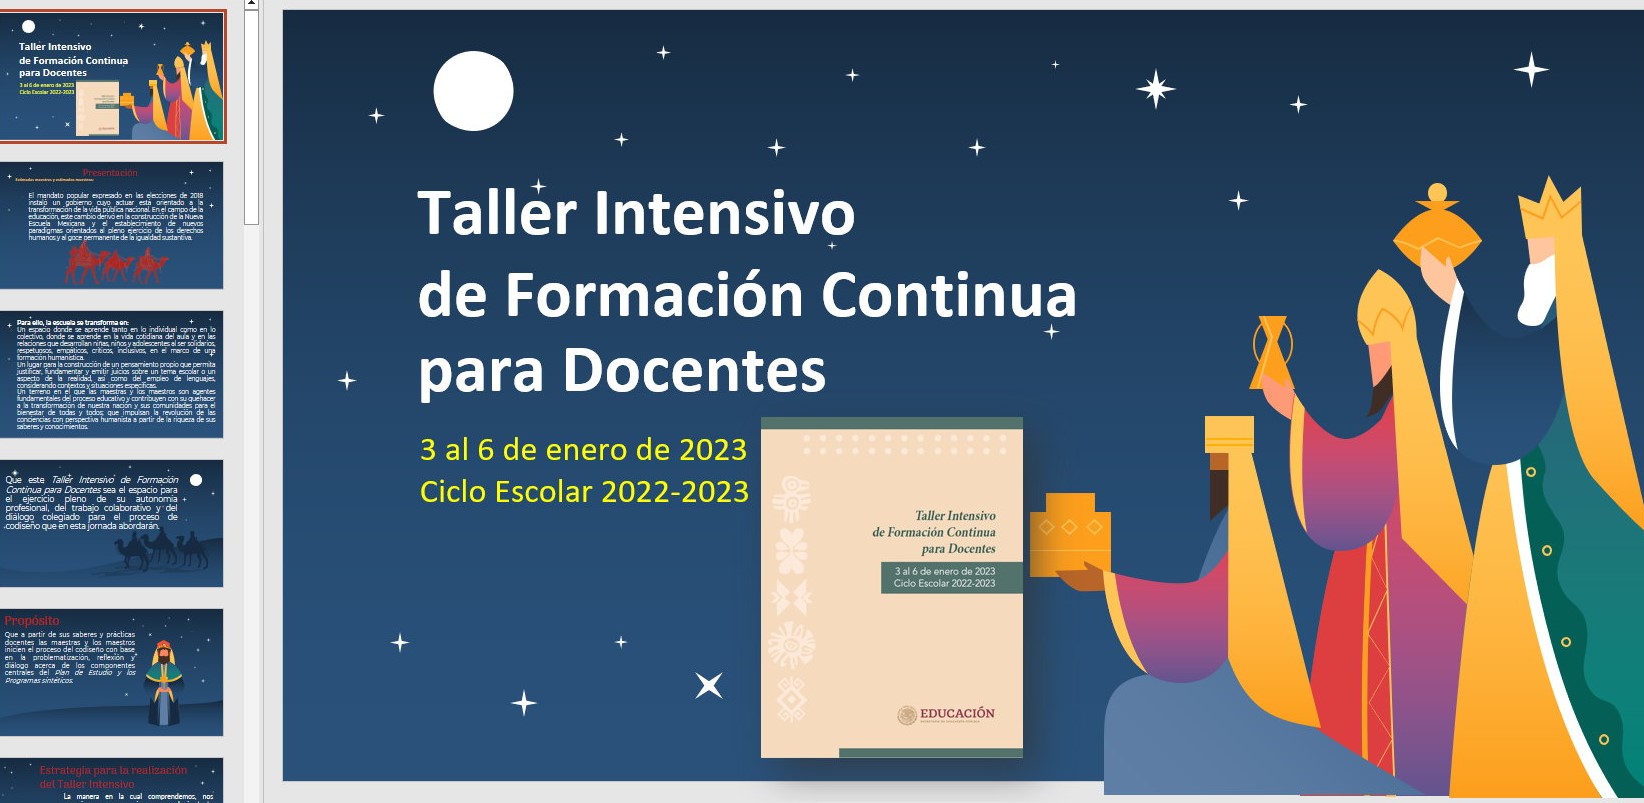 Presentación en PowerPoint y PDF del Taller Intensivo de Formación Continua para Docentes del 2 al 6 de enero de 2023